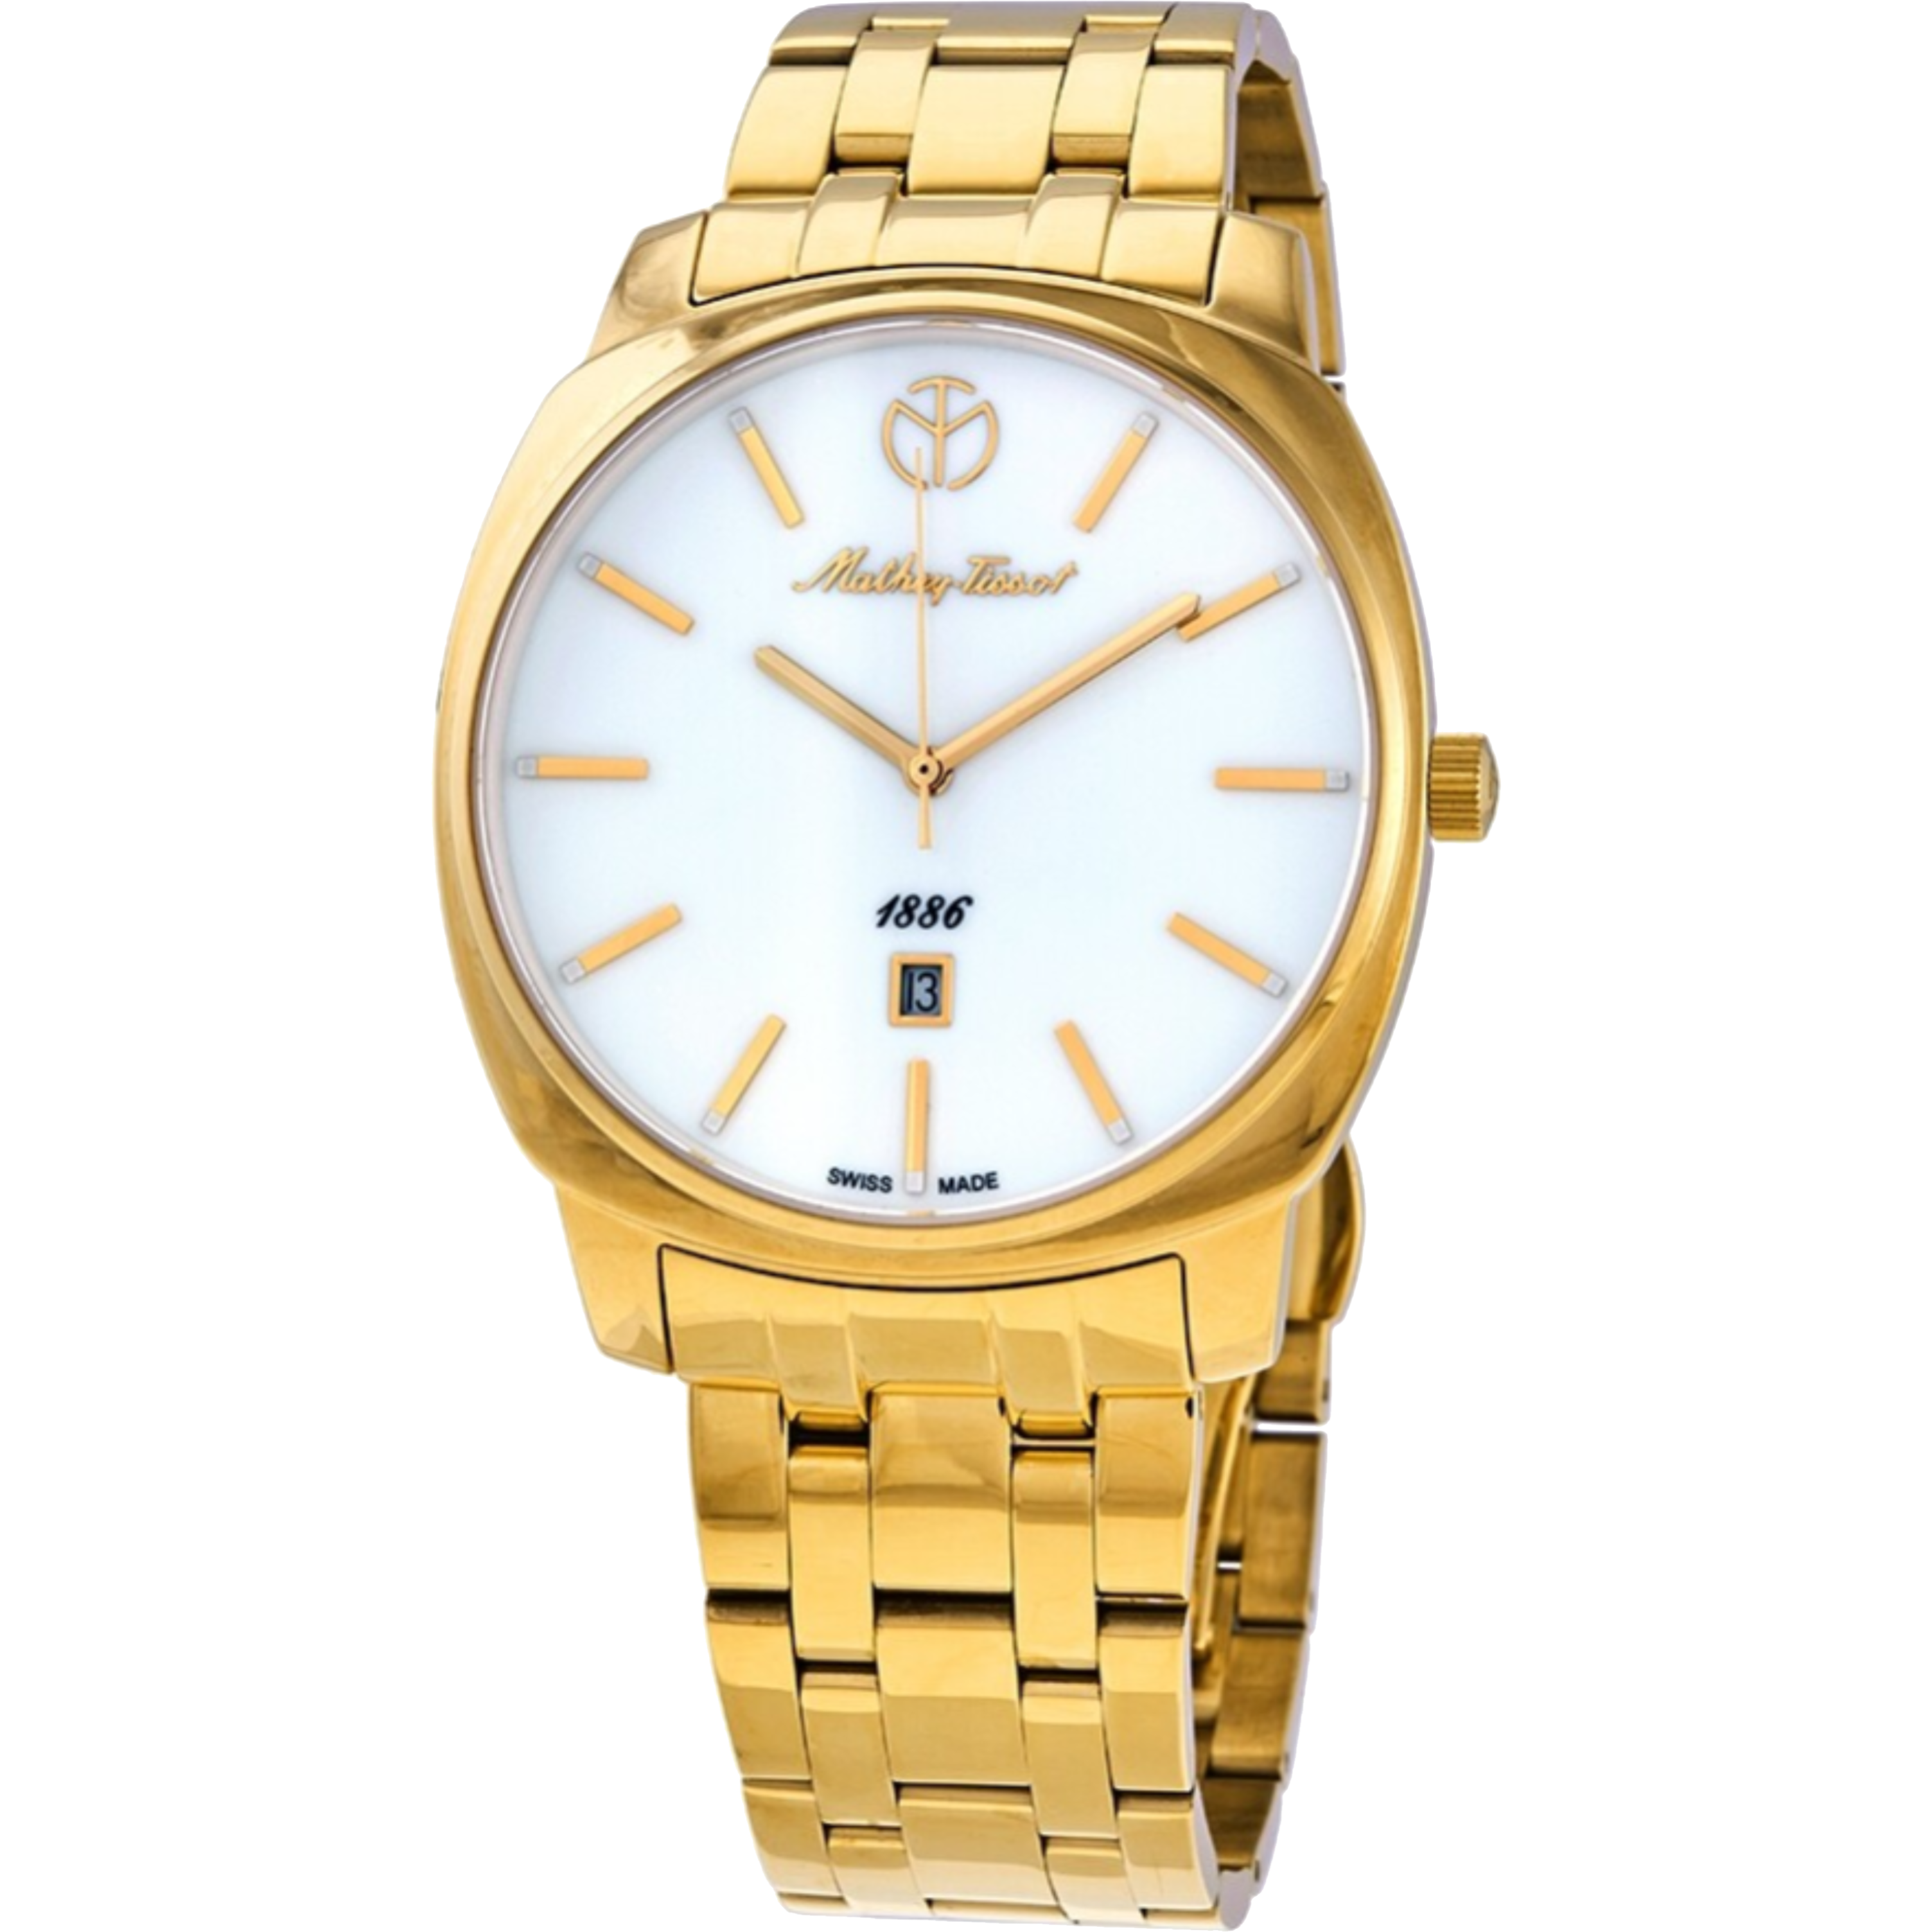 שעון יד לגבר Mathey Tissot H6940MPI 42mm צבע זהב/זכוכית ספיר - אחריות לשנה ע"י היבואן